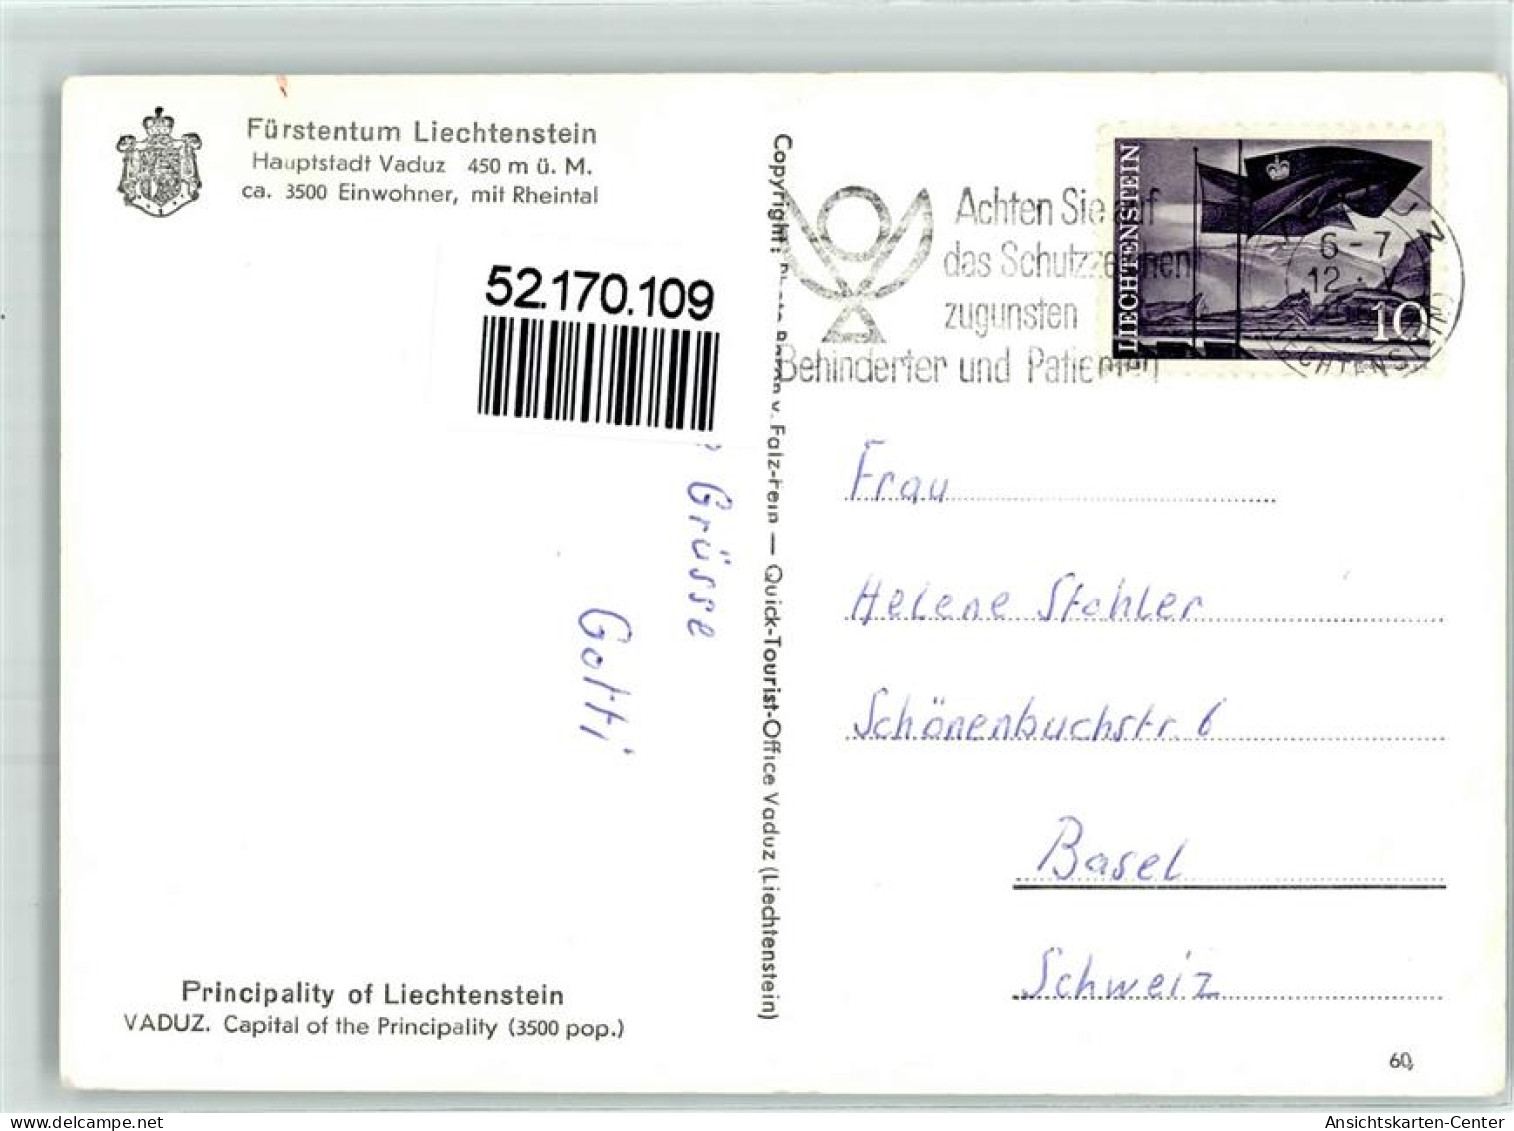 52170109 - Vaduz - Liechtenstein